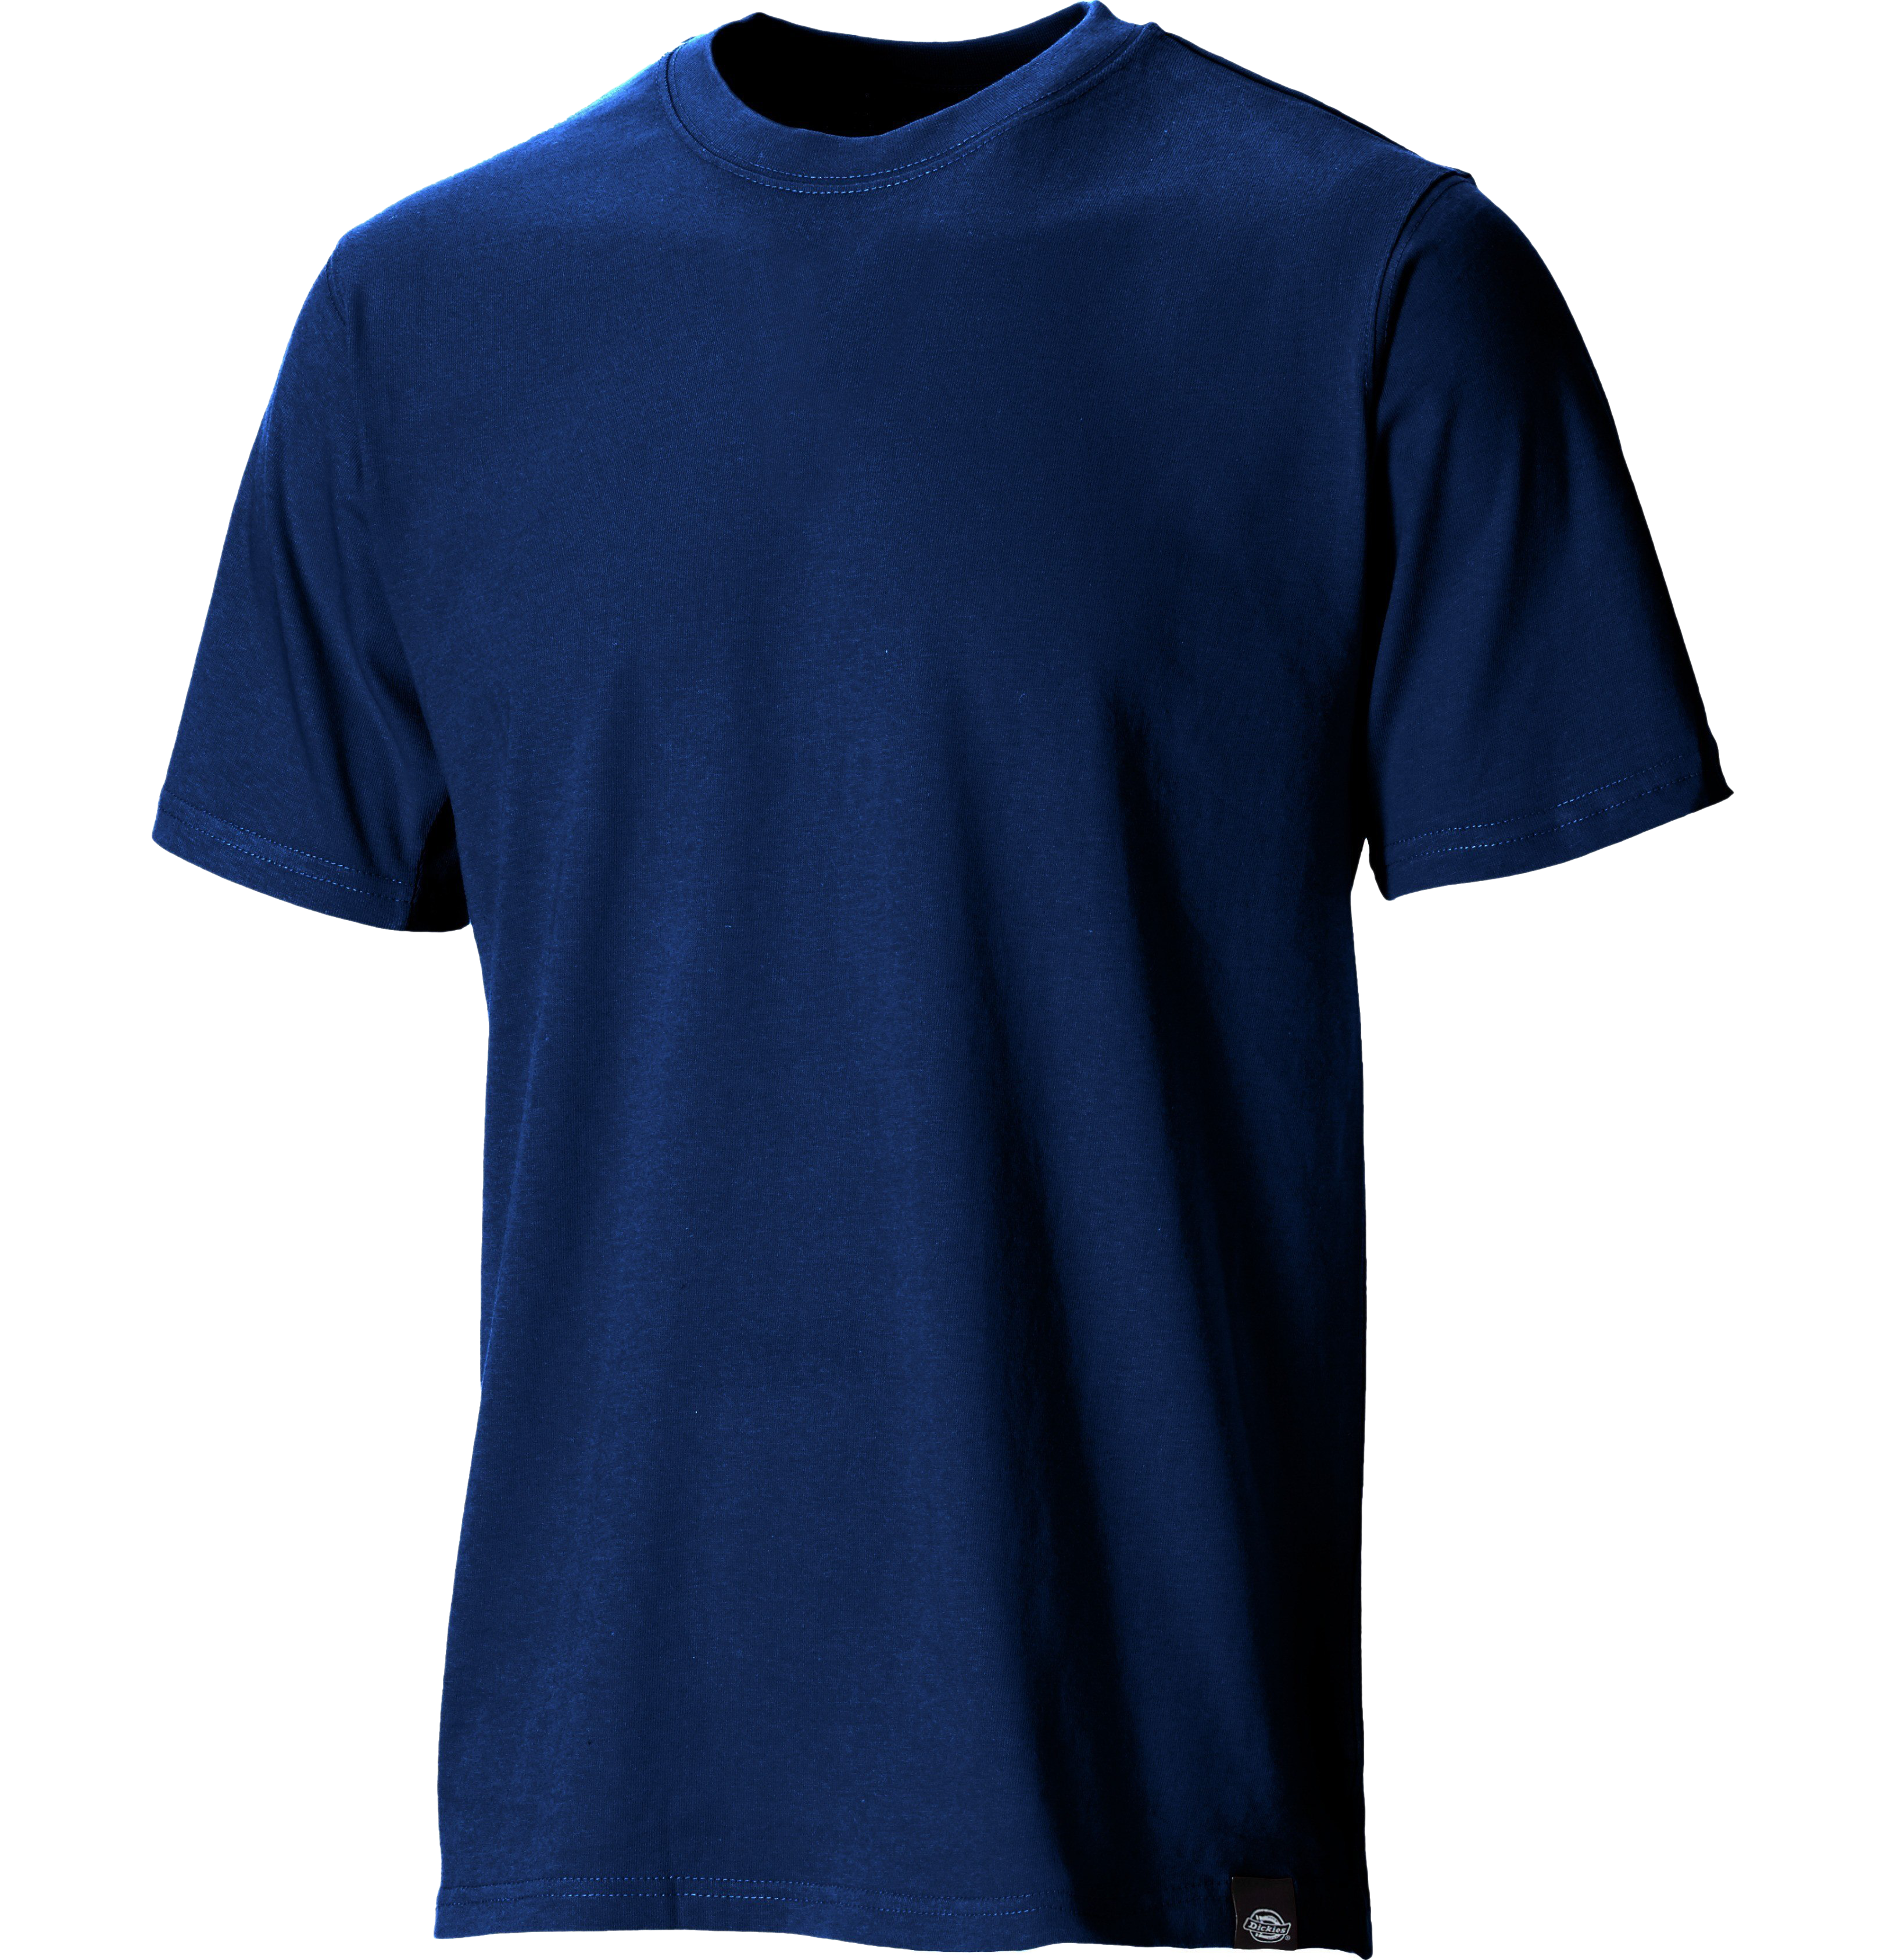 Plain Blue T-Shirt Transparent Background PNG